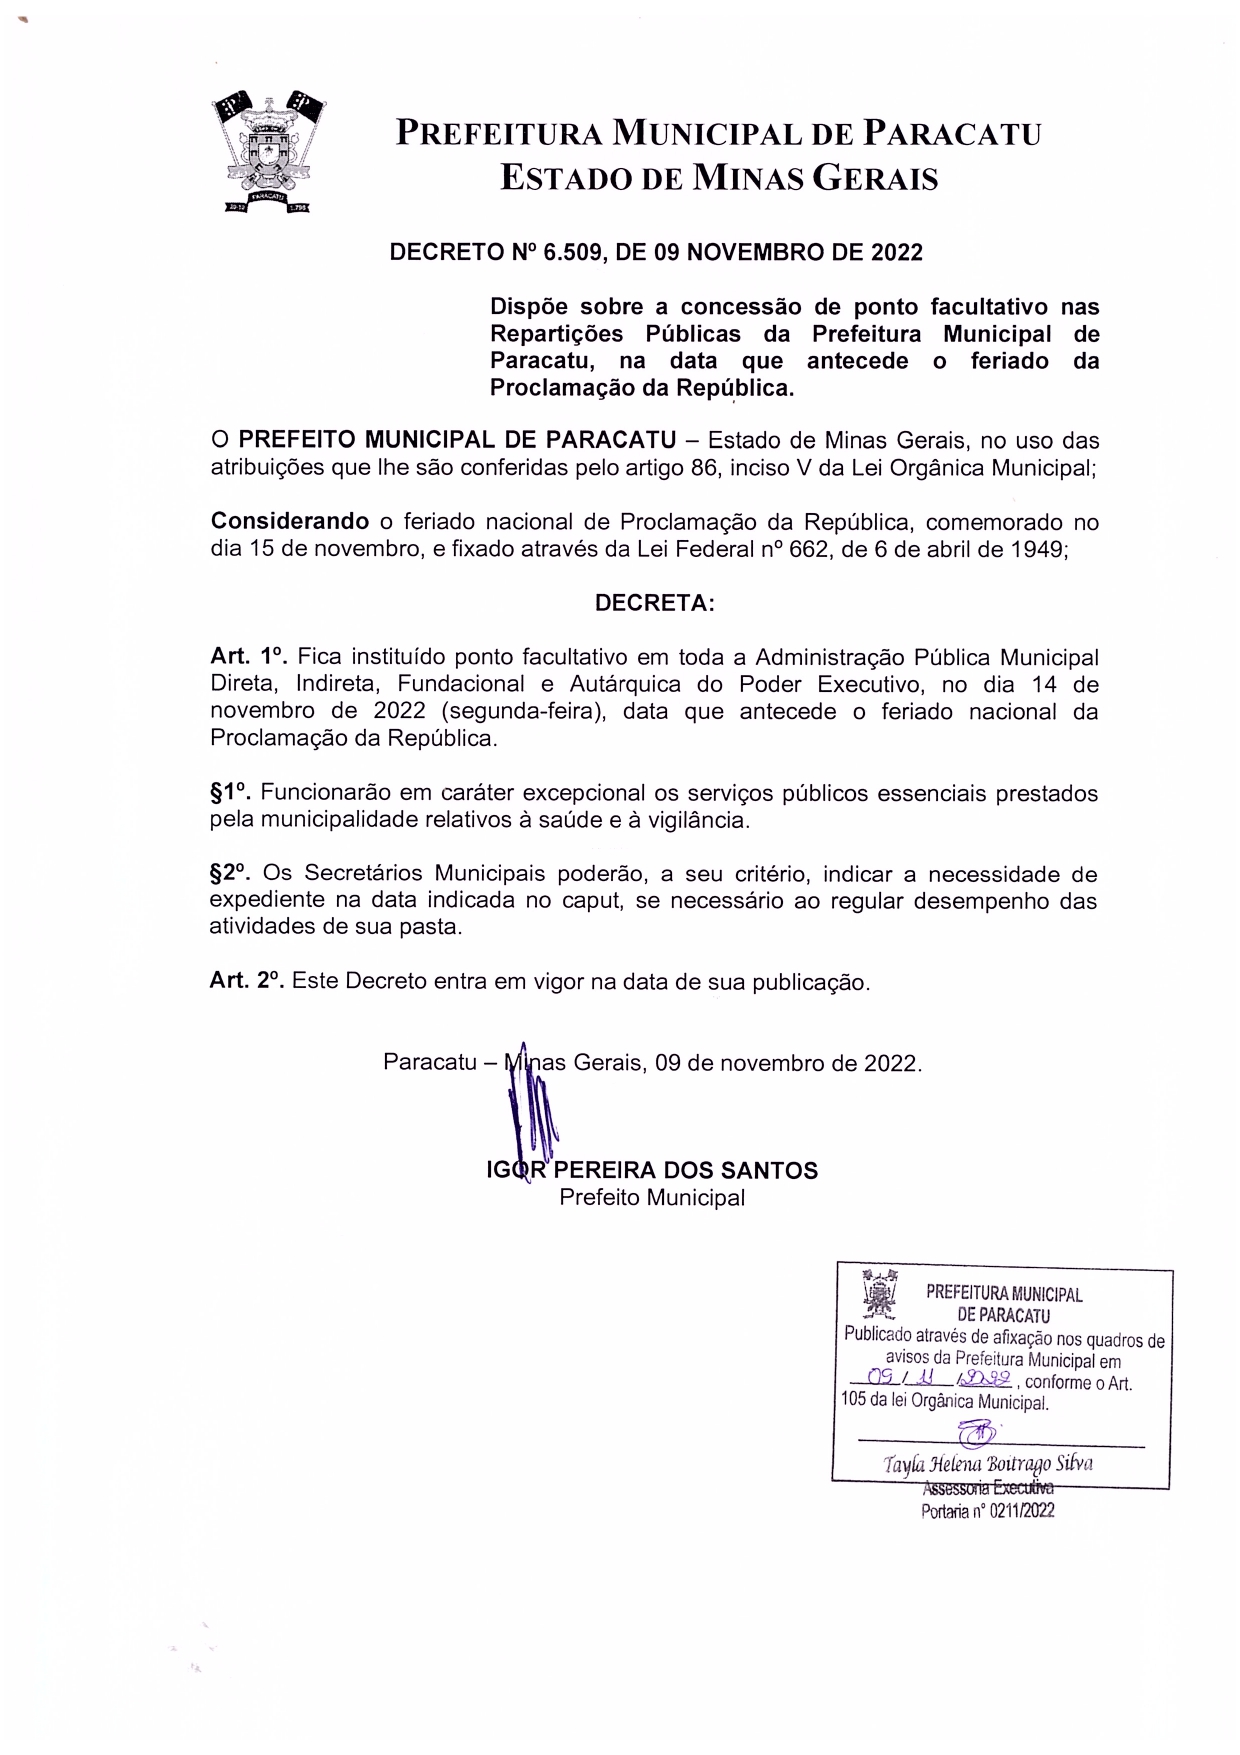 Decreto nº 6.509, de 09 de novembro de 2022 - Decreta ponto facultativo no município de Paracatu (14-11-2022)_page-0001